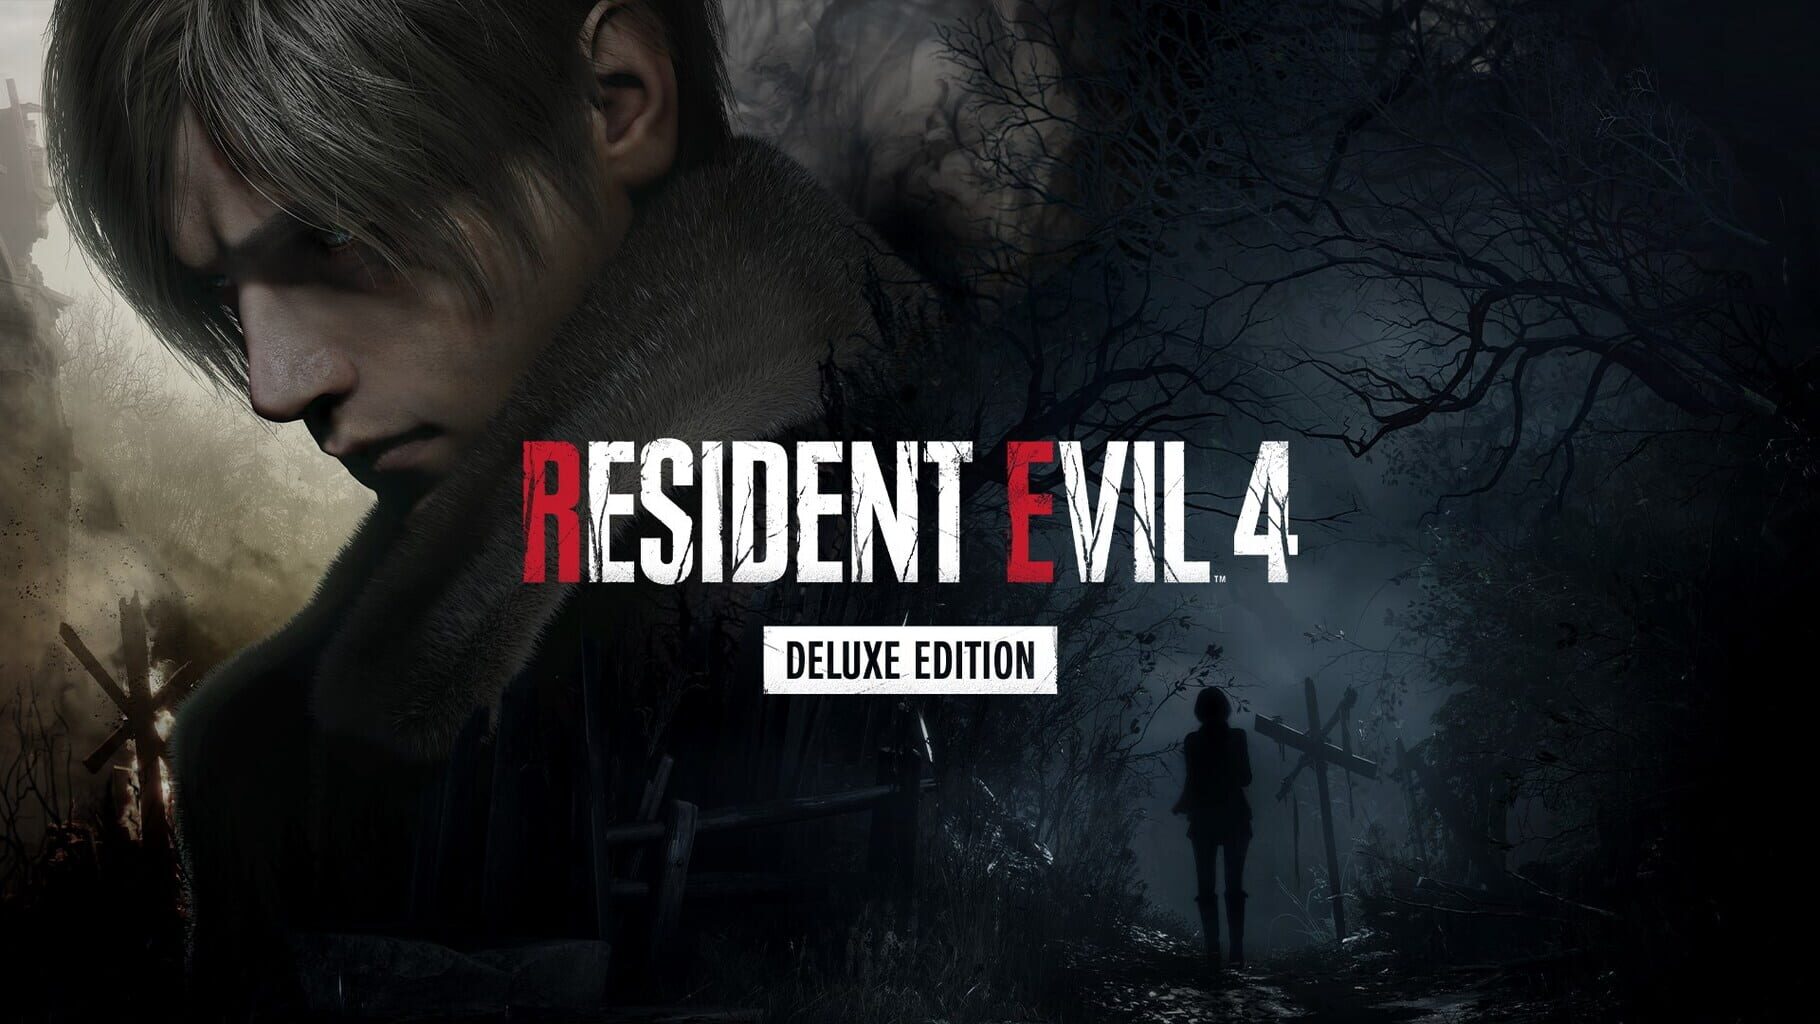 Arte - Resident Evil 4: Deluxe Edition